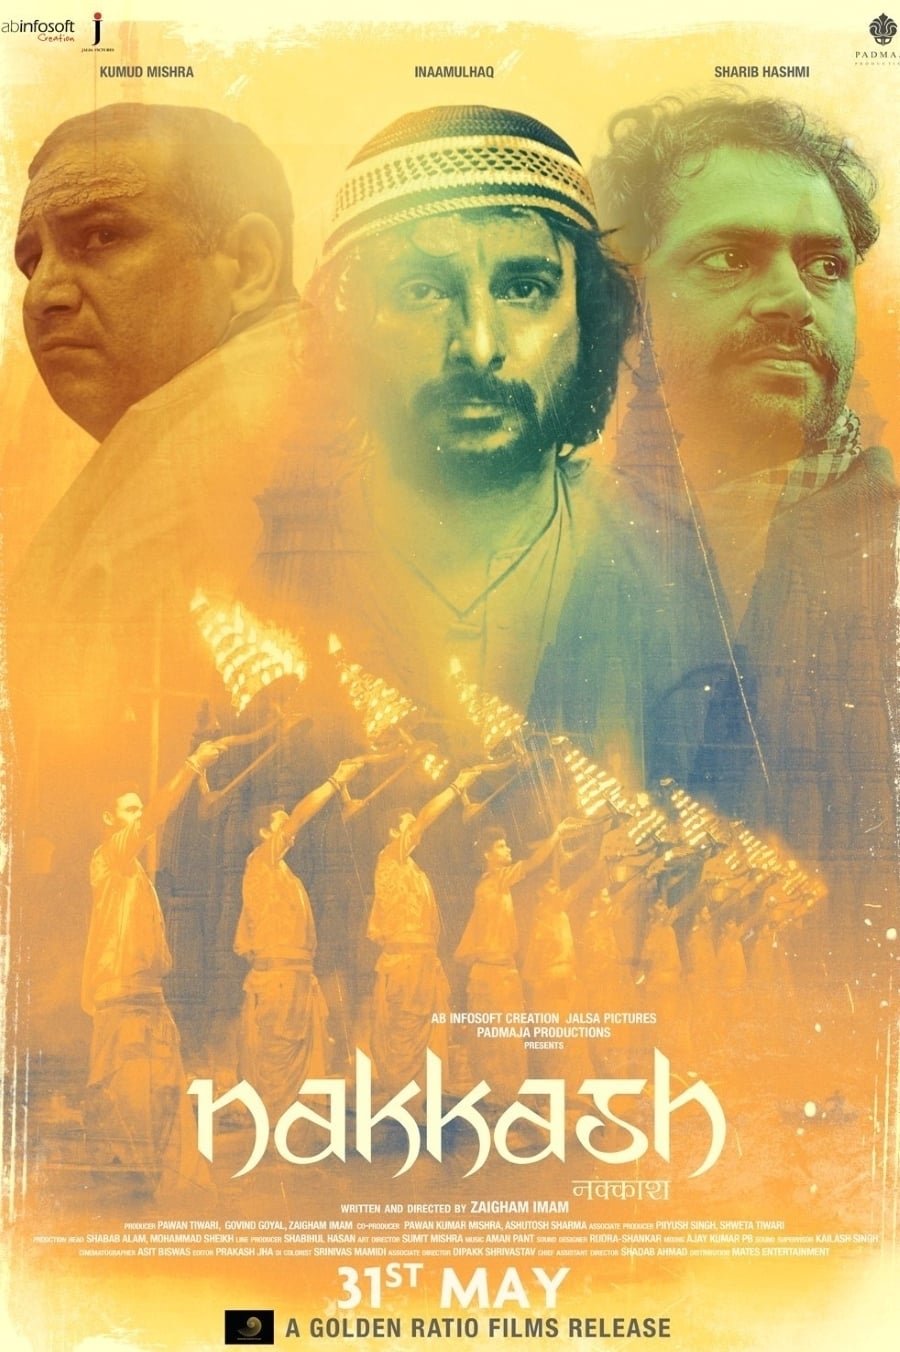 Nakkash (2019)